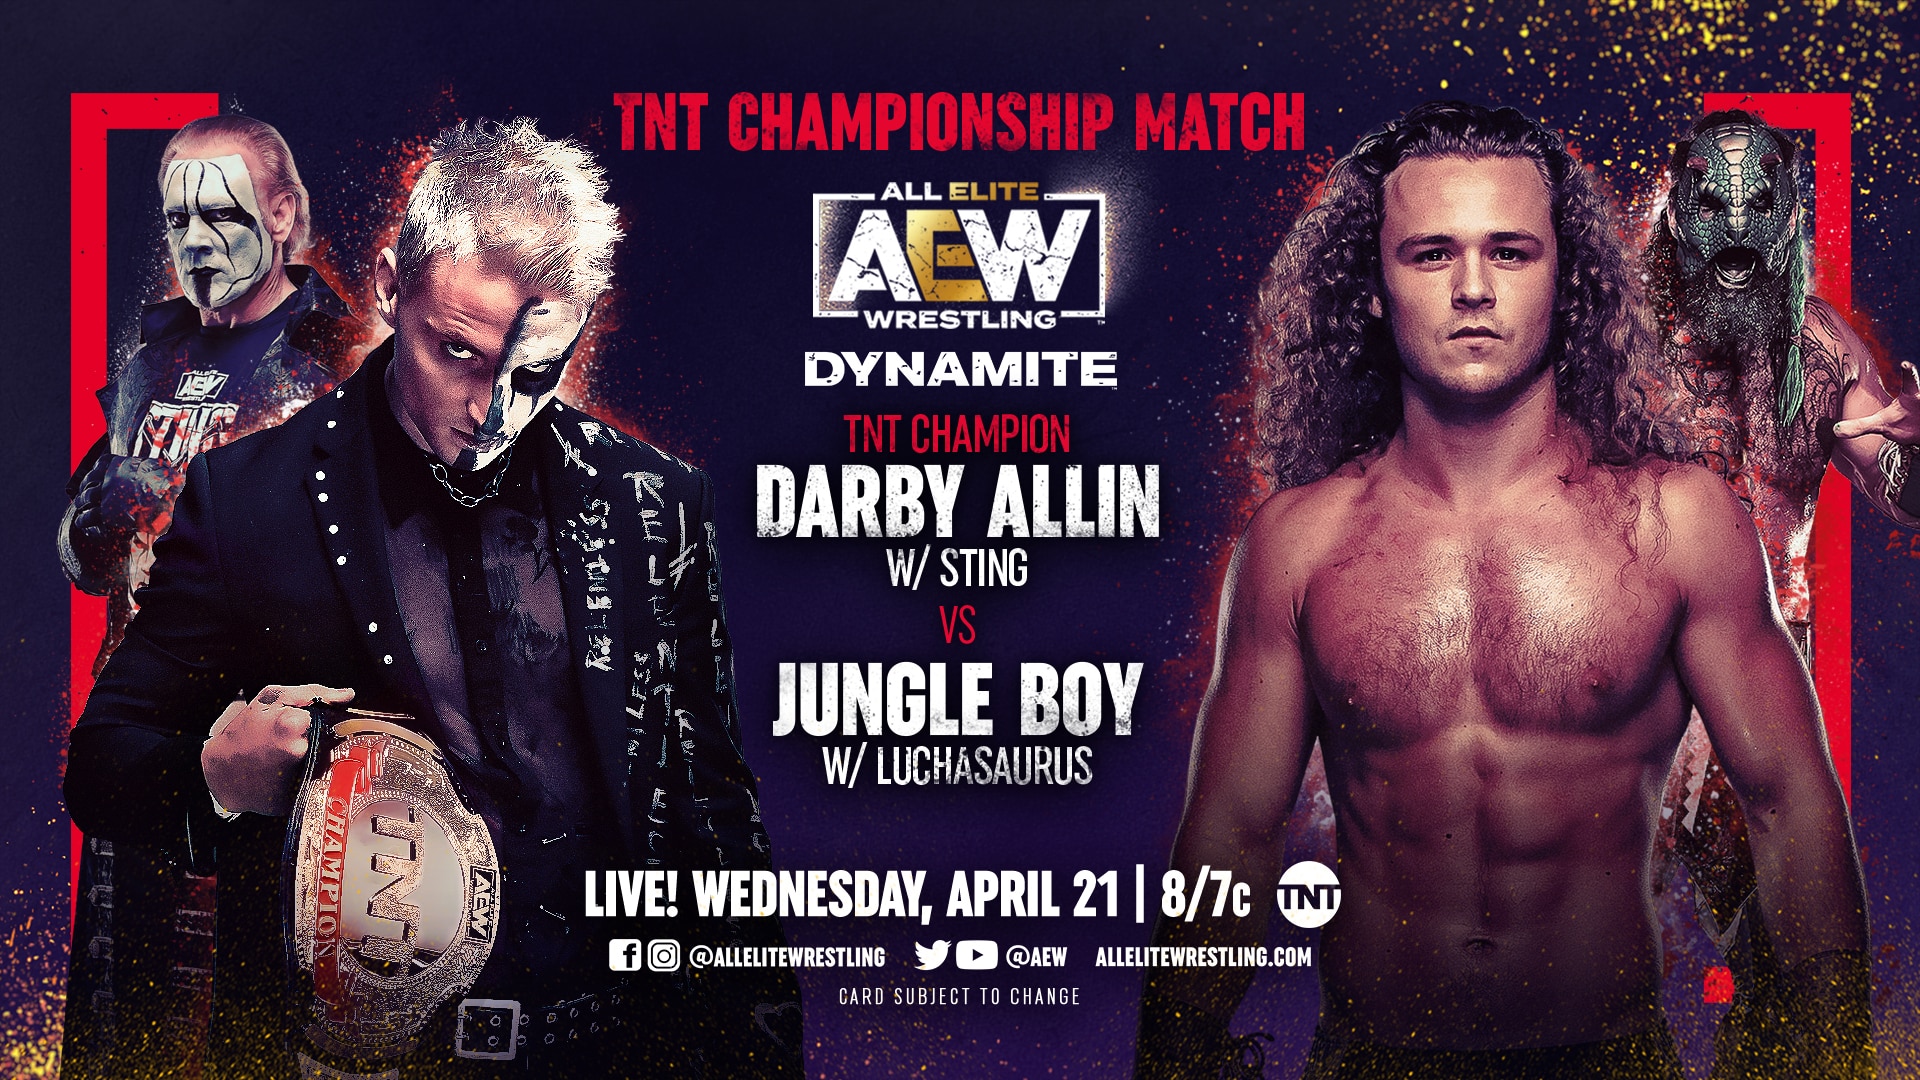  Darby Allin vs Jungle Boy